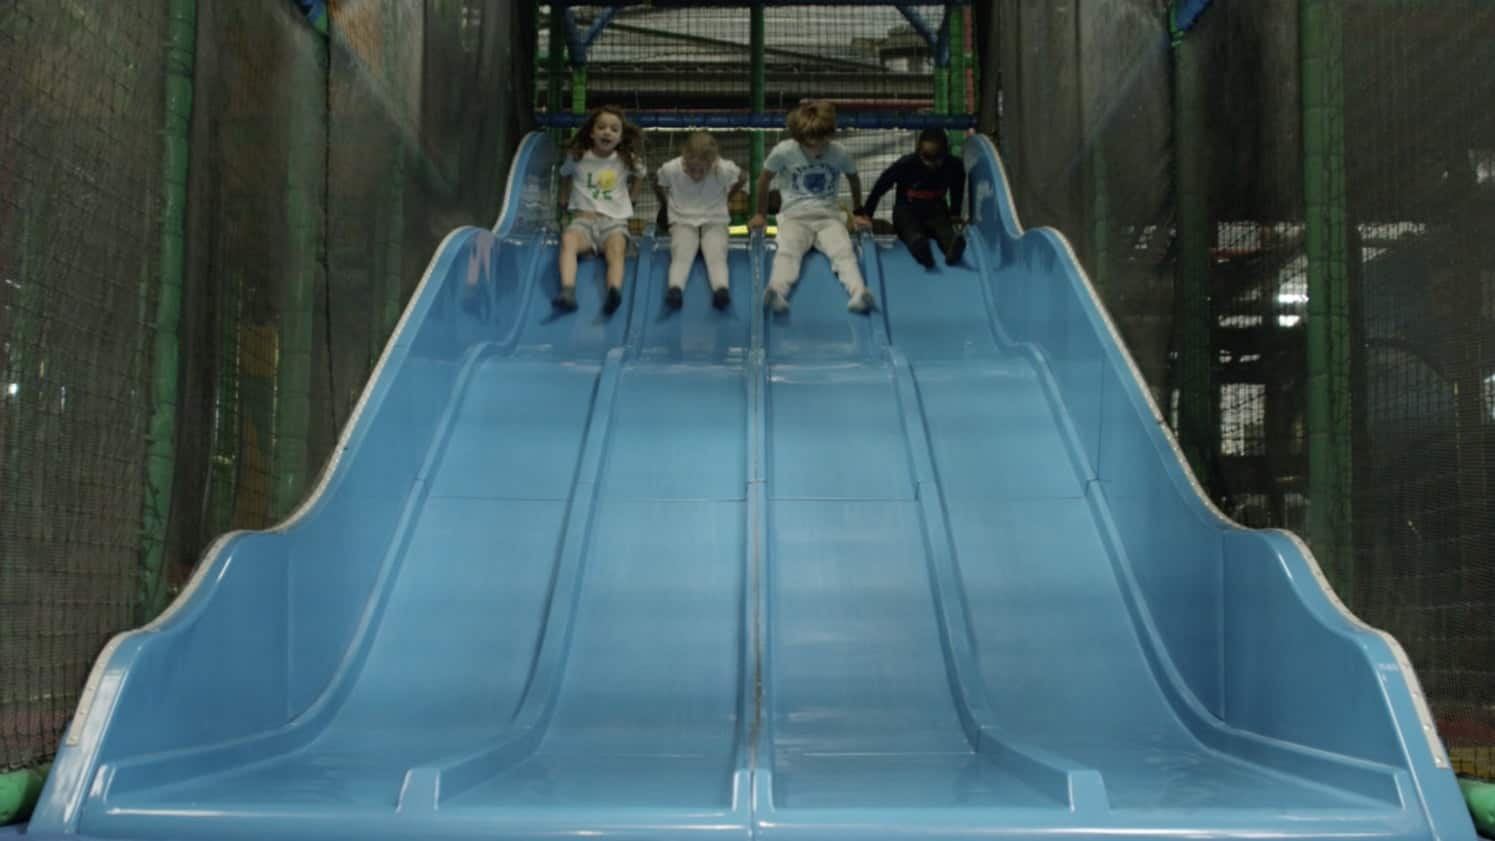 Un nouveau Gulli Parc, l'aire de jeux couverte pour les enfants